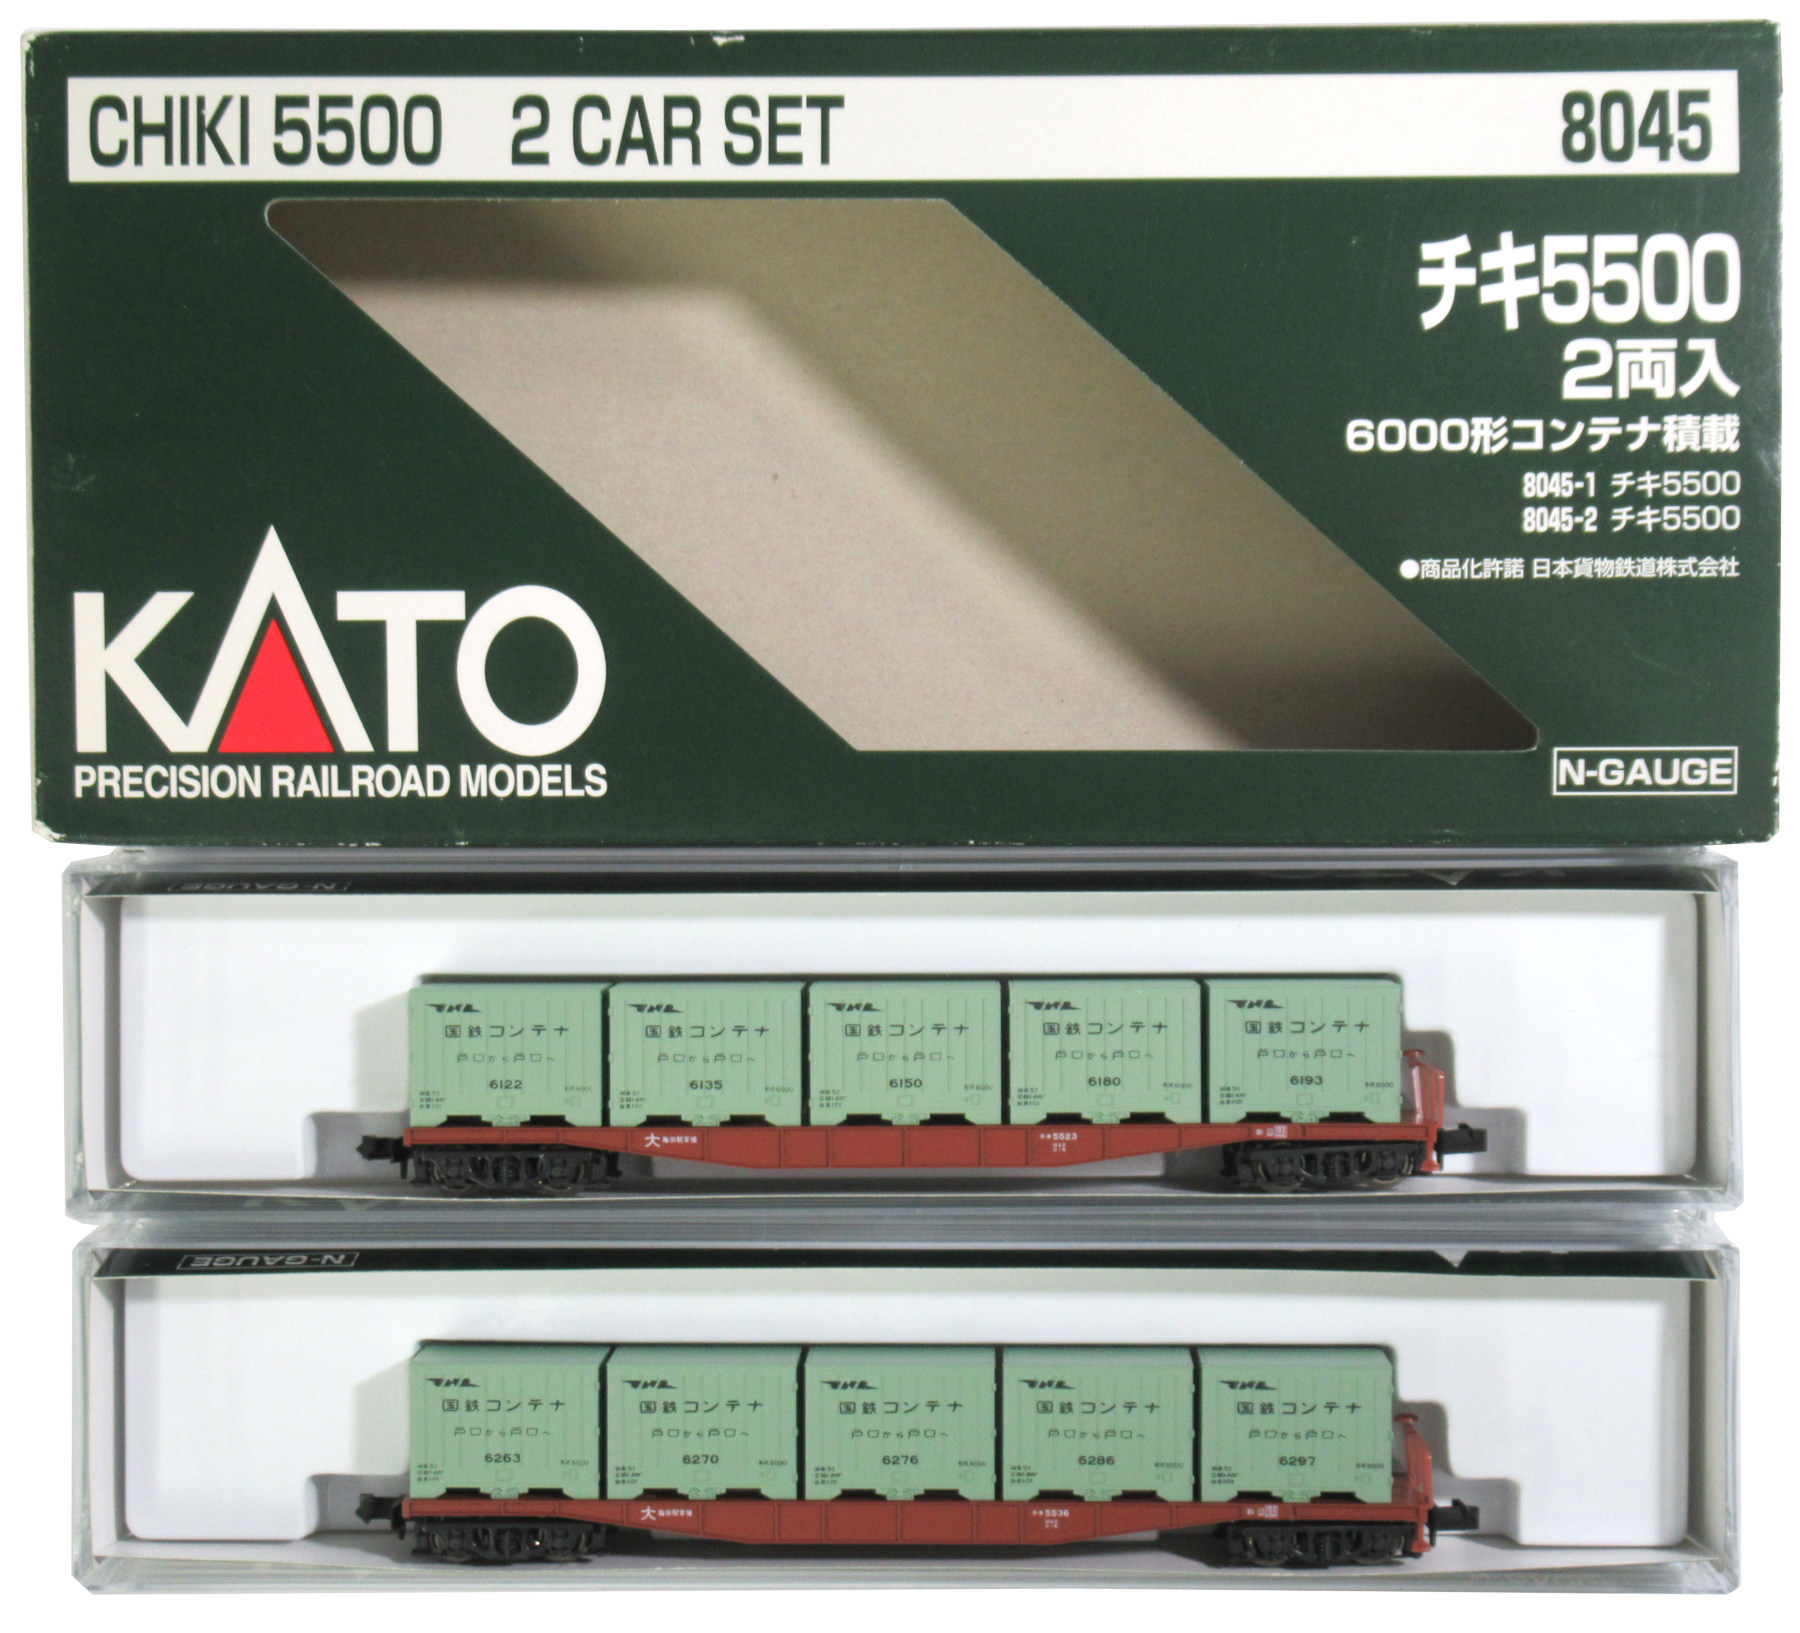 最安値爆買い新品未使用、8044 KATO チキ5000 2両入 5000形コンテナ搭載 鉄道模型